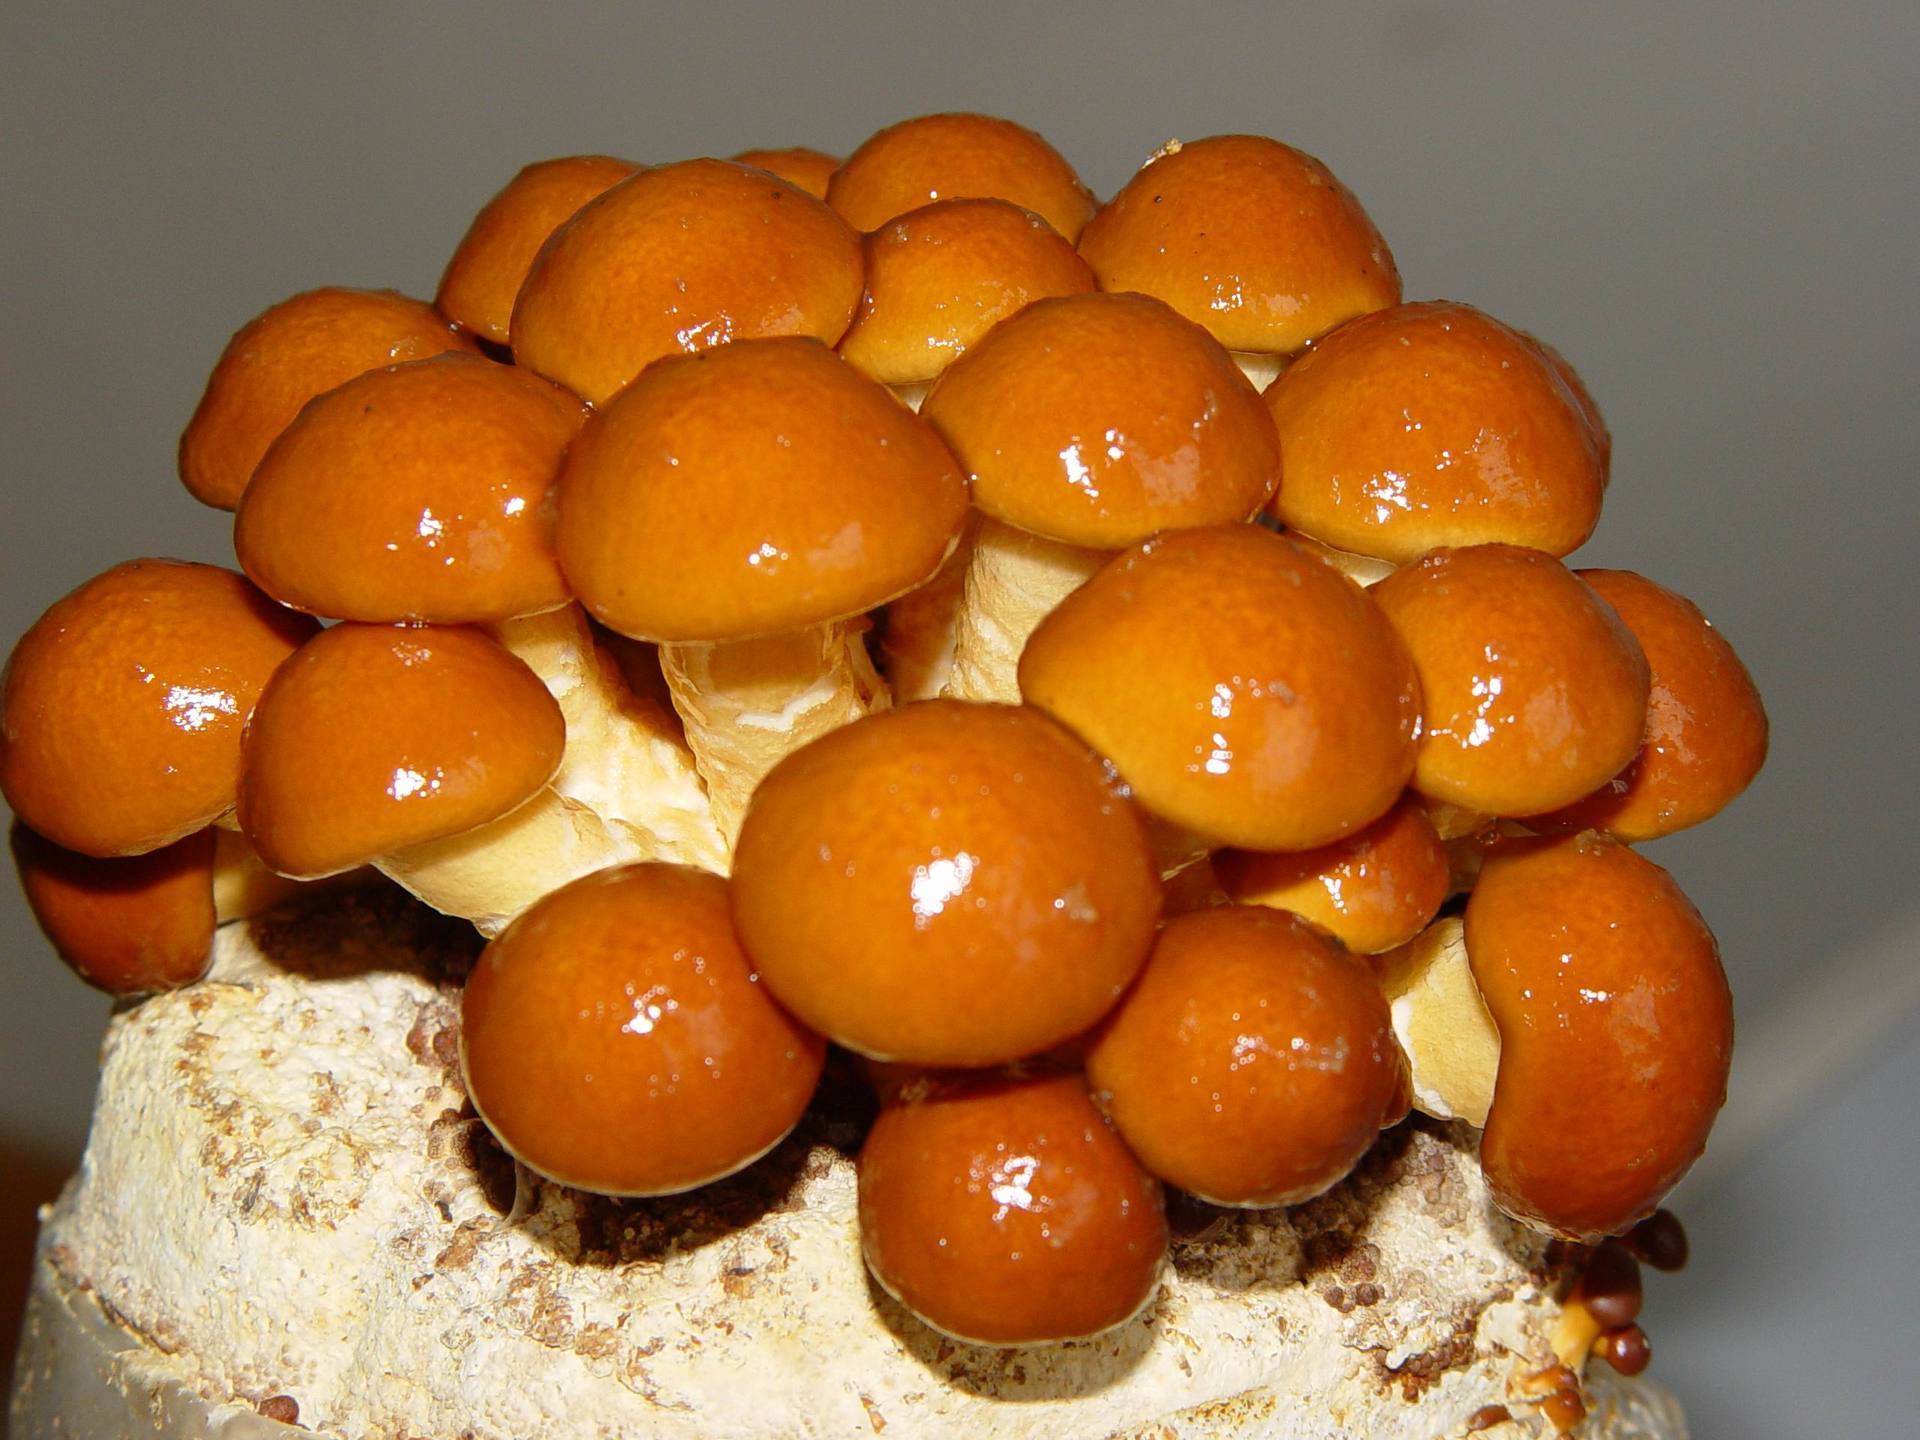 球盖菇科鳞伞属,一种冬,春季发生的菌盖粘滑的木腐菌,为主要人工栽培